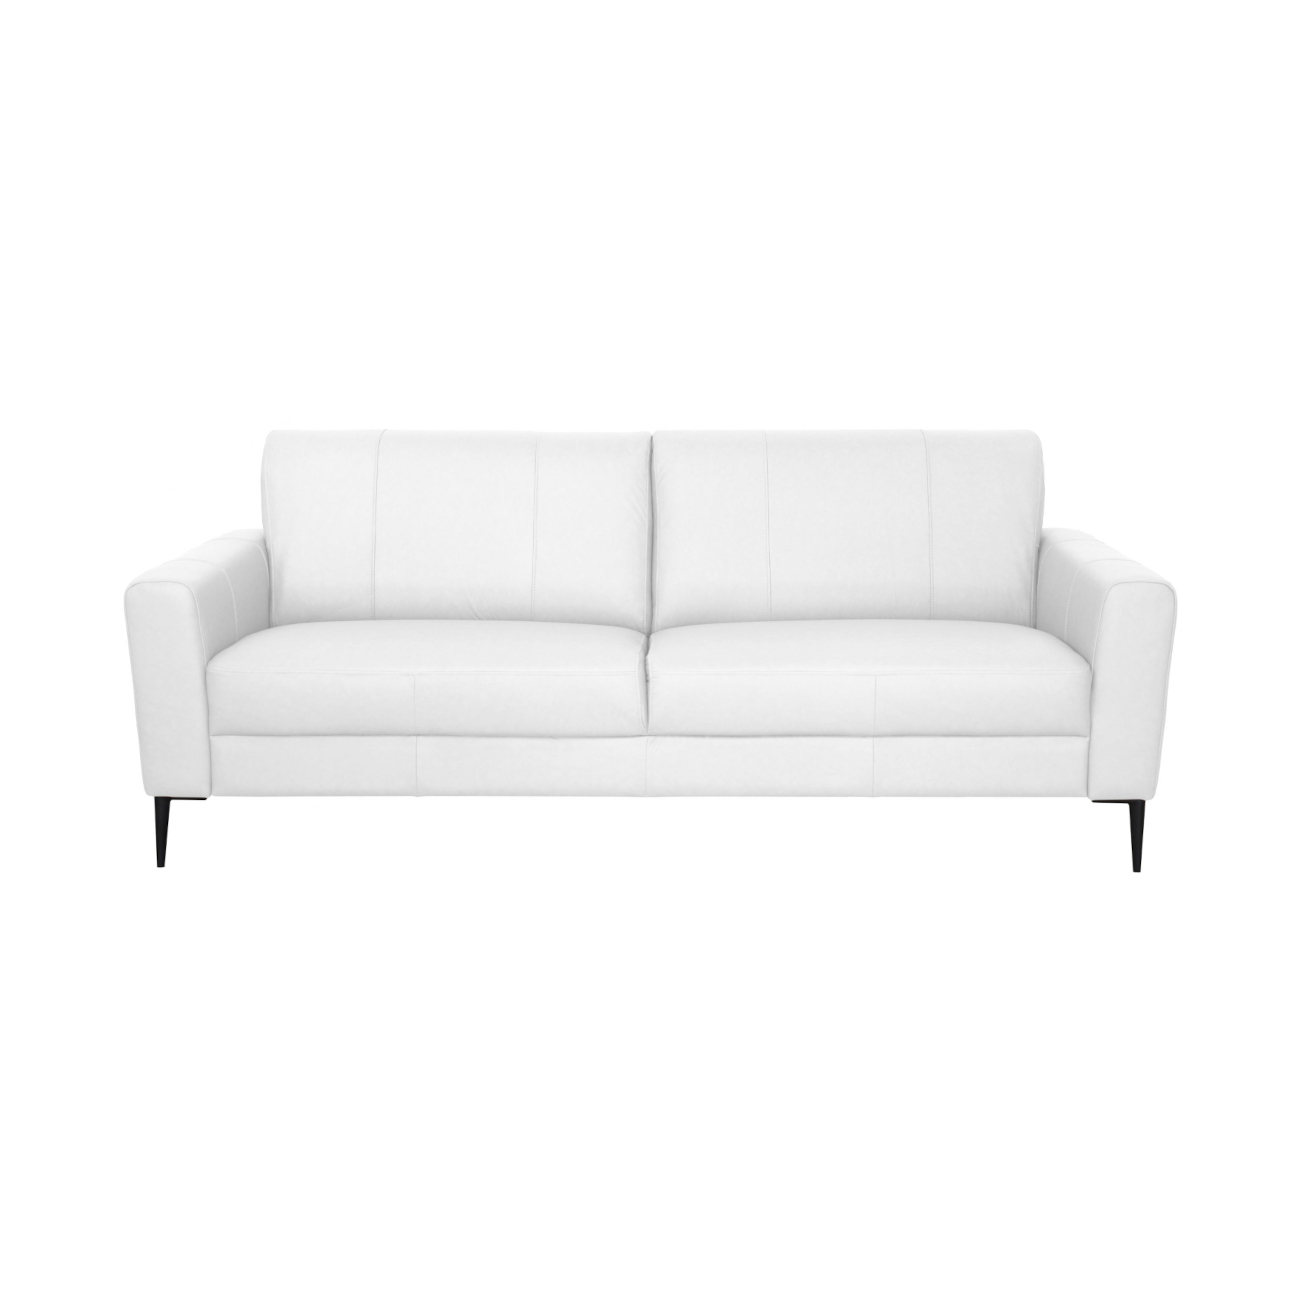 Hovi sohva nahka, valkoinen